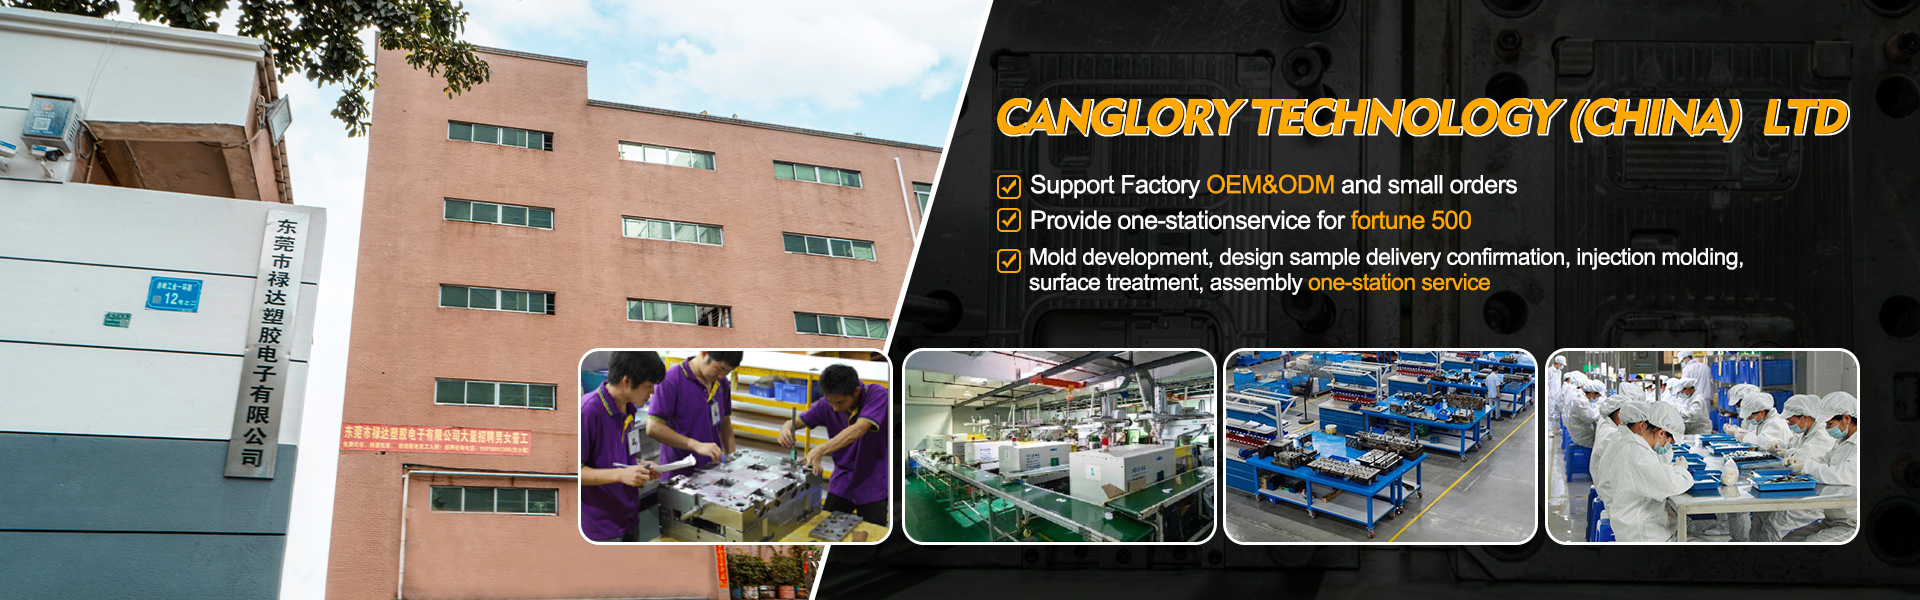 Lar - Moldagem, injeção, fabricante de equipamentos originais|Canglory Technology (China) Ltd